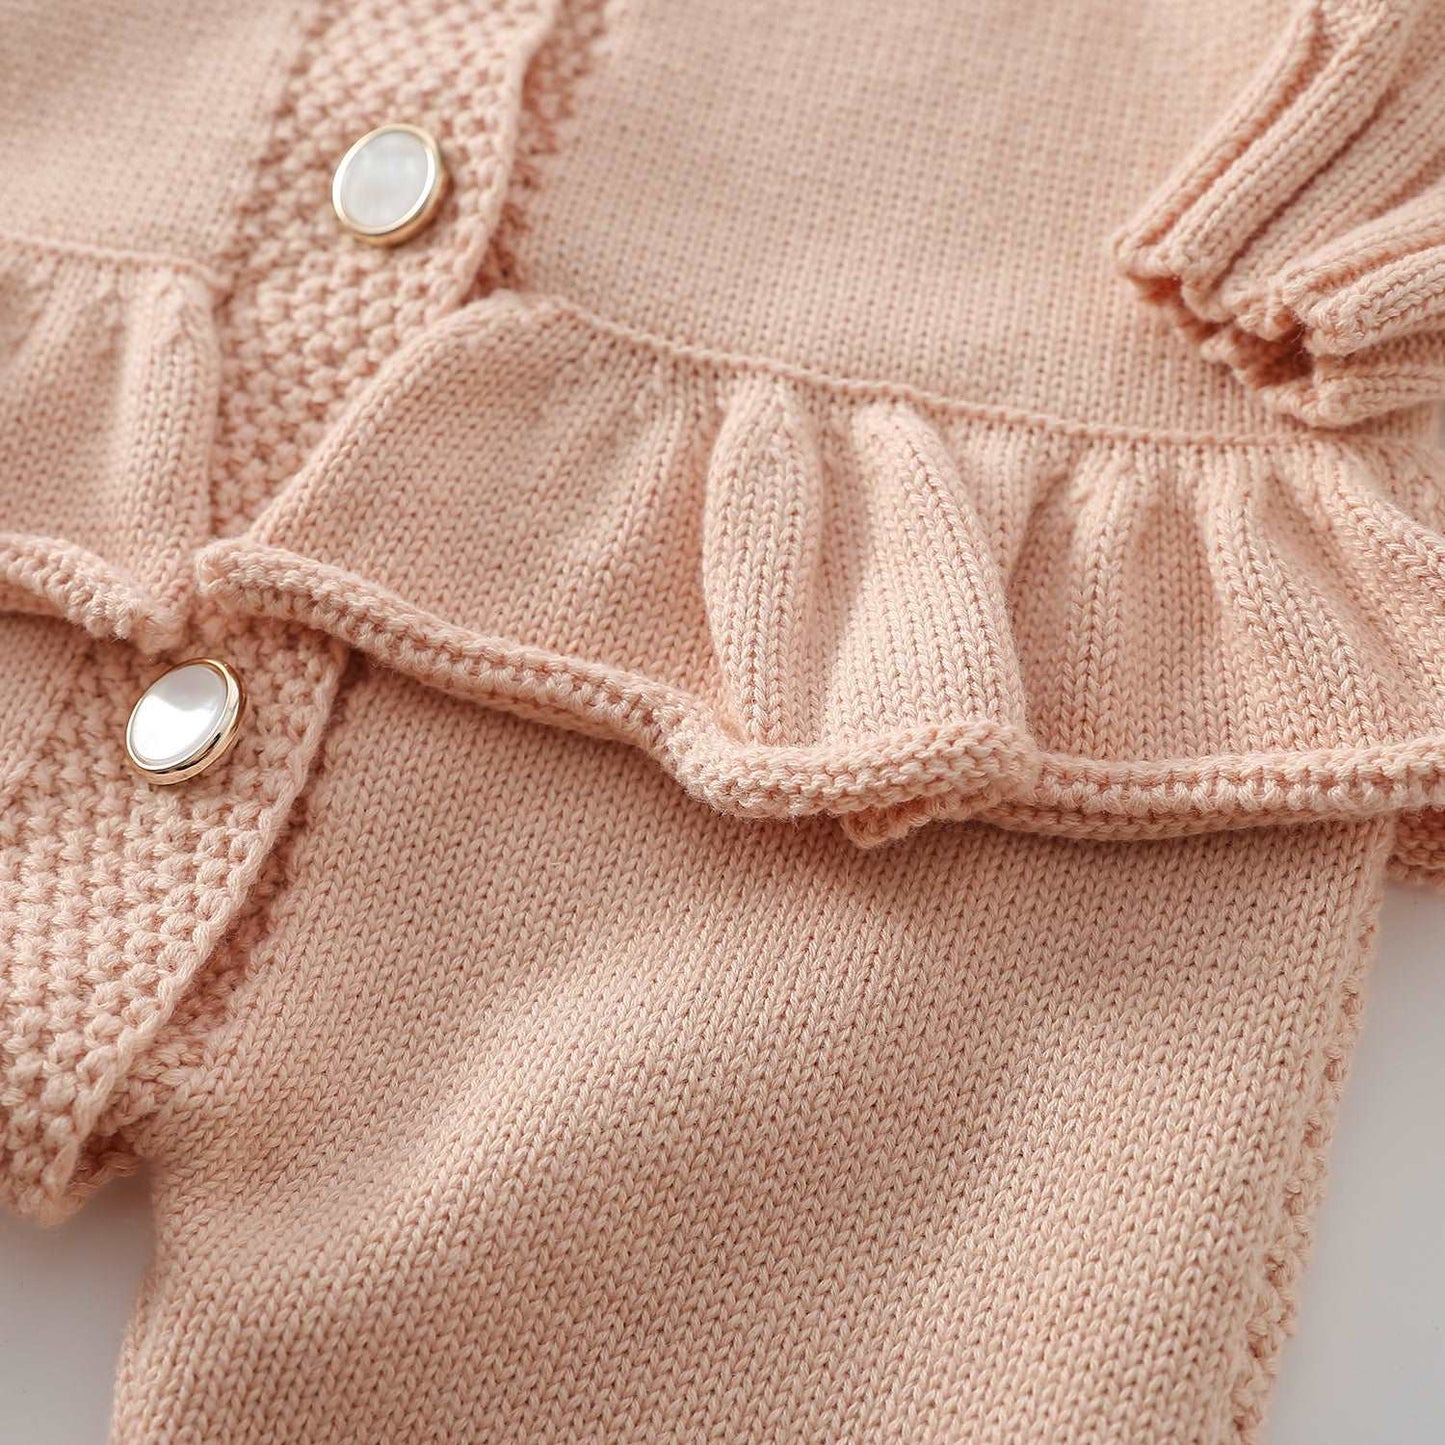 Ruffles n' Frills Knit Jumpsuit || Angels Breath Pink